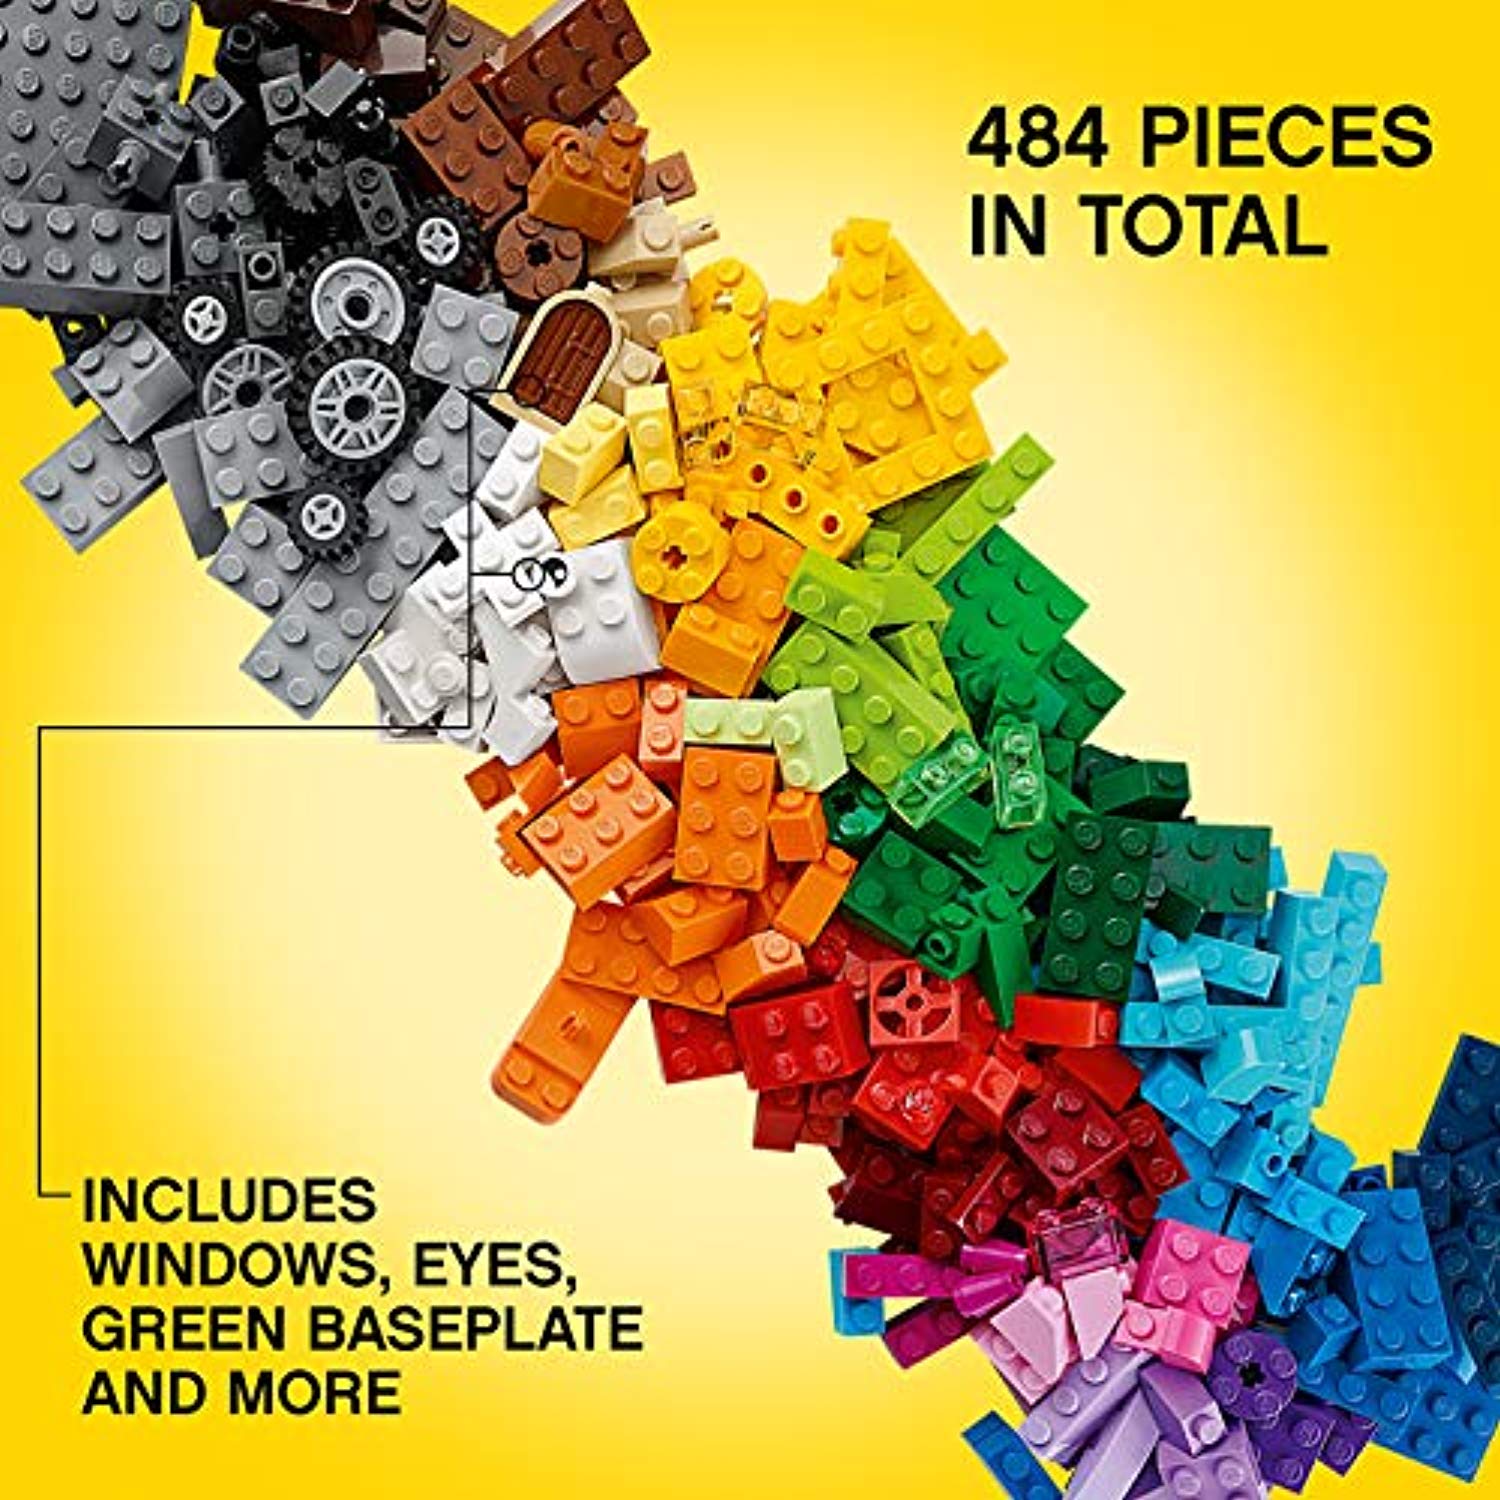 LEGO 10696 Classic Medium Creative Brick Box, Easy Toy Storage, Lego Masters Fan Gift - Offer Games